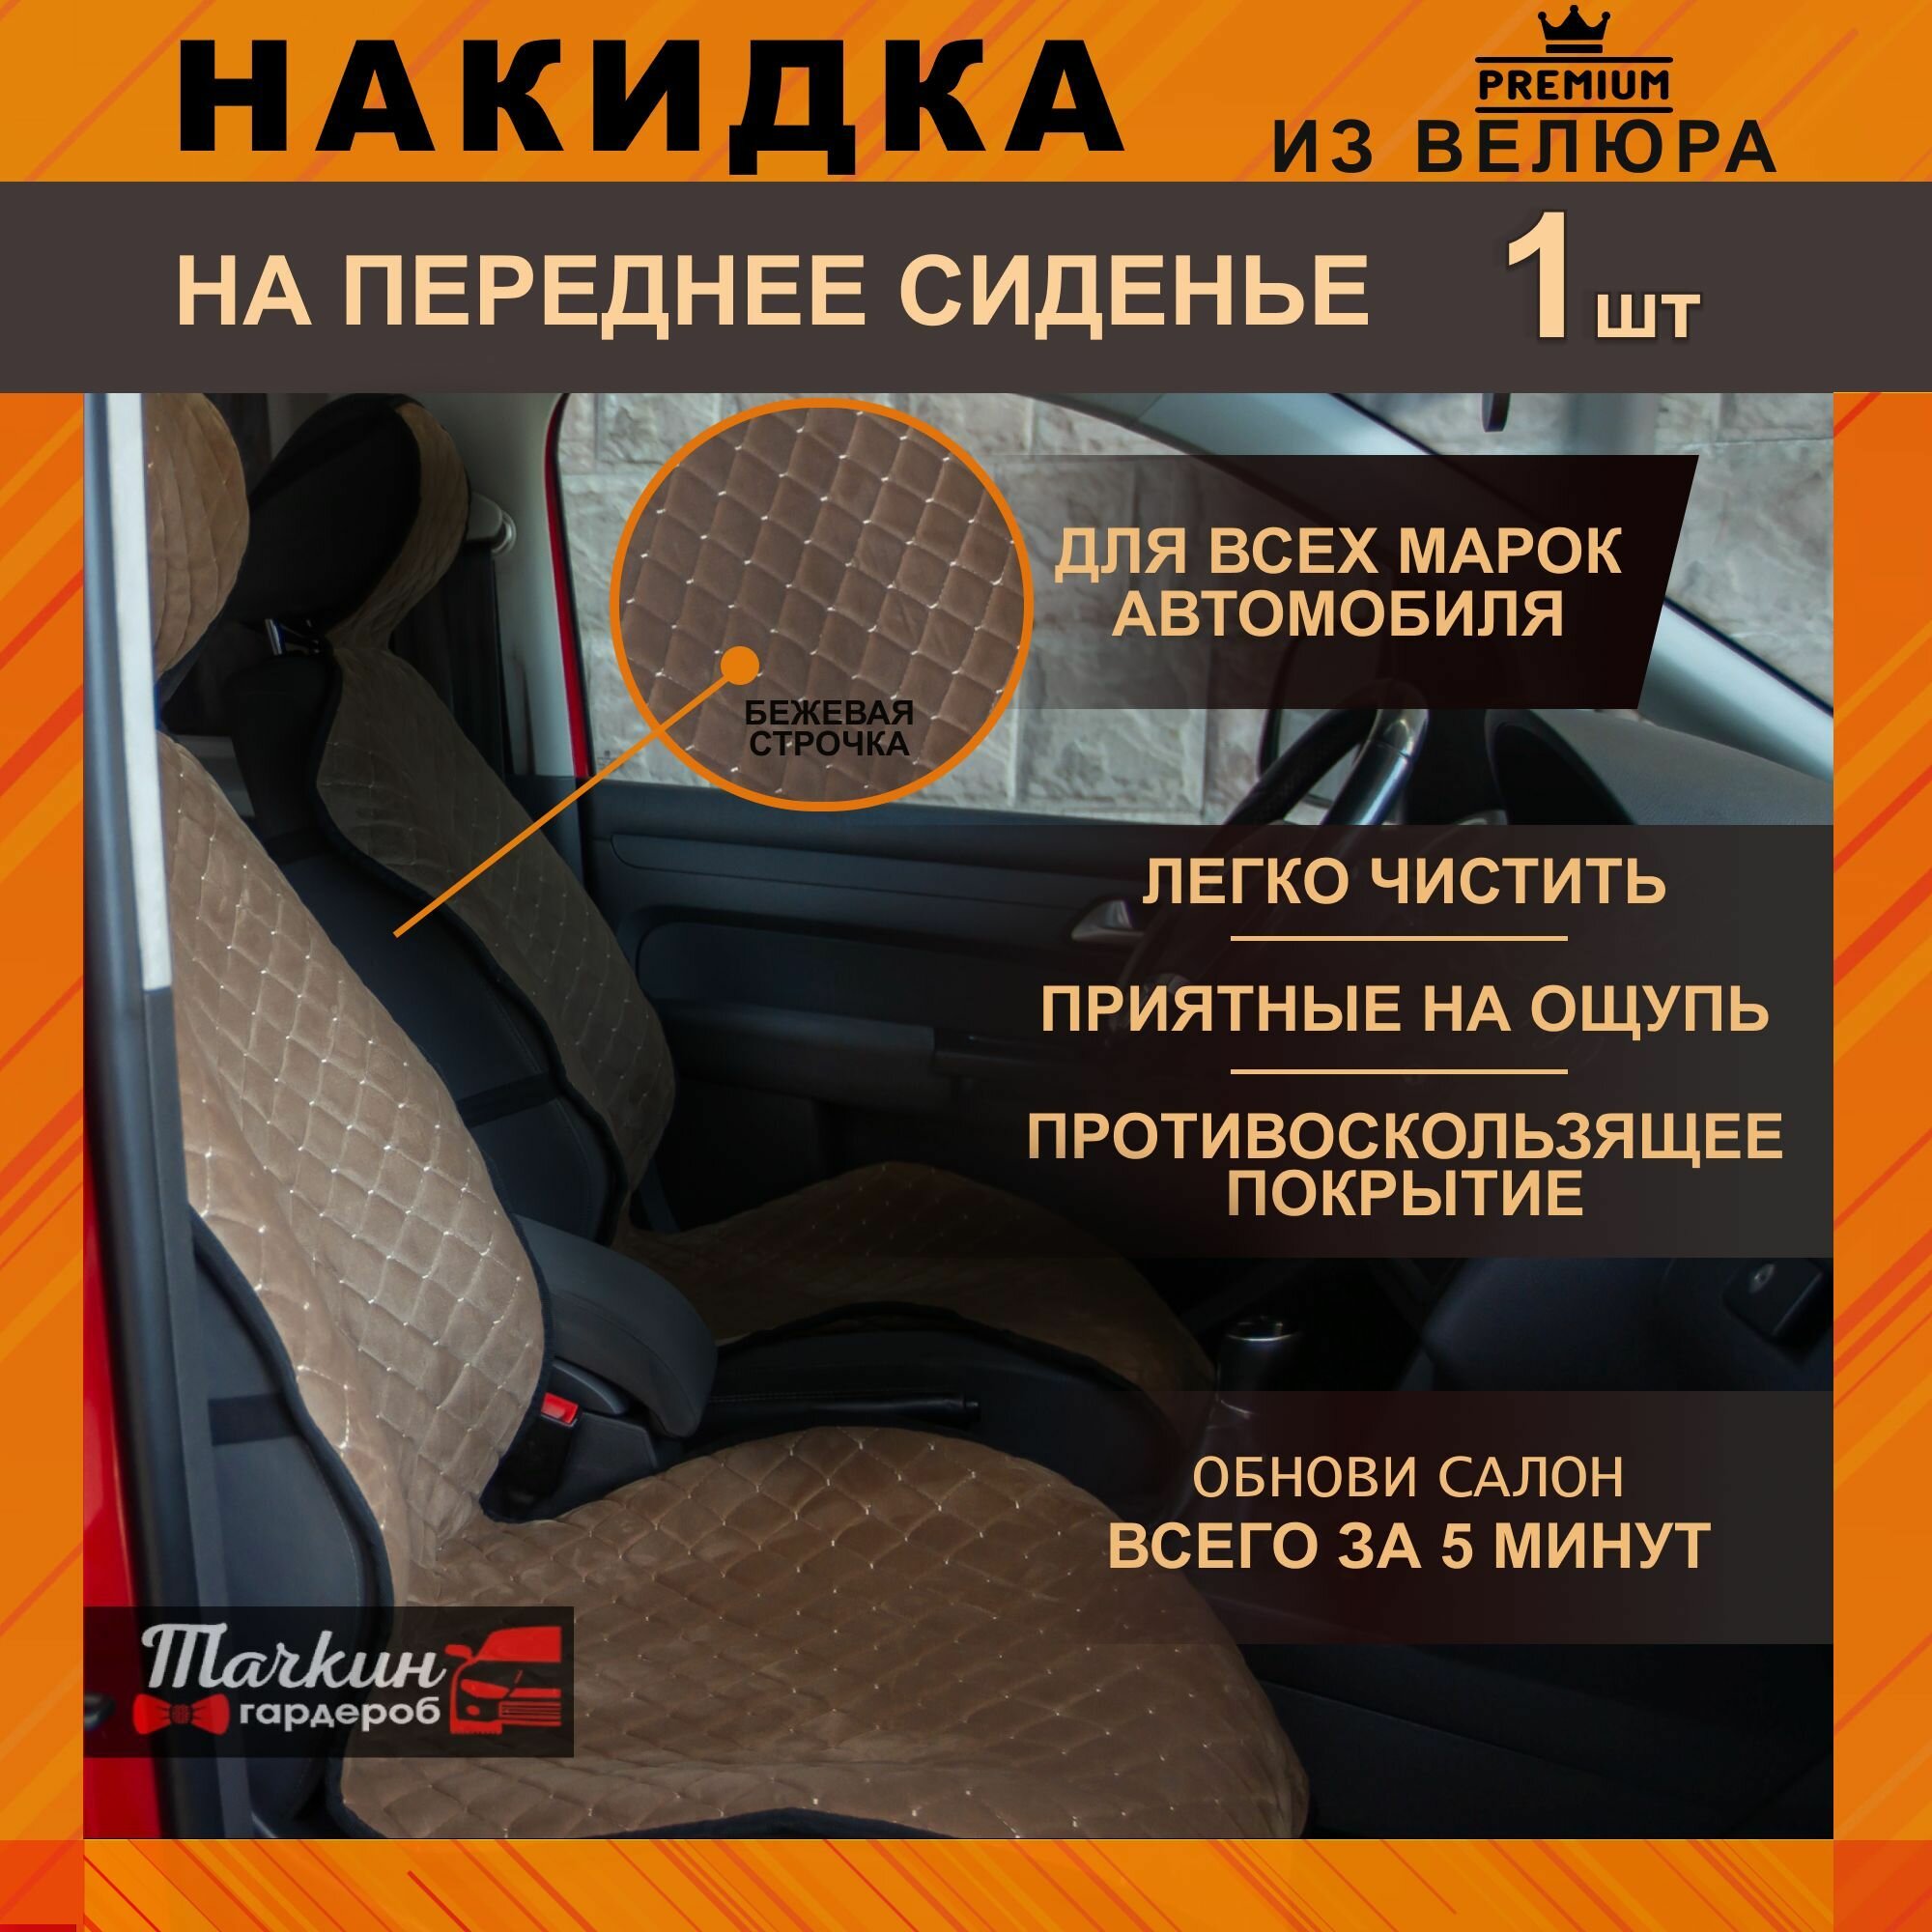 Накидка узкая защита на сиденье автомобиля универсальная из велюра. Ткань ромб бежевый, строчка бежевая 1 шт.